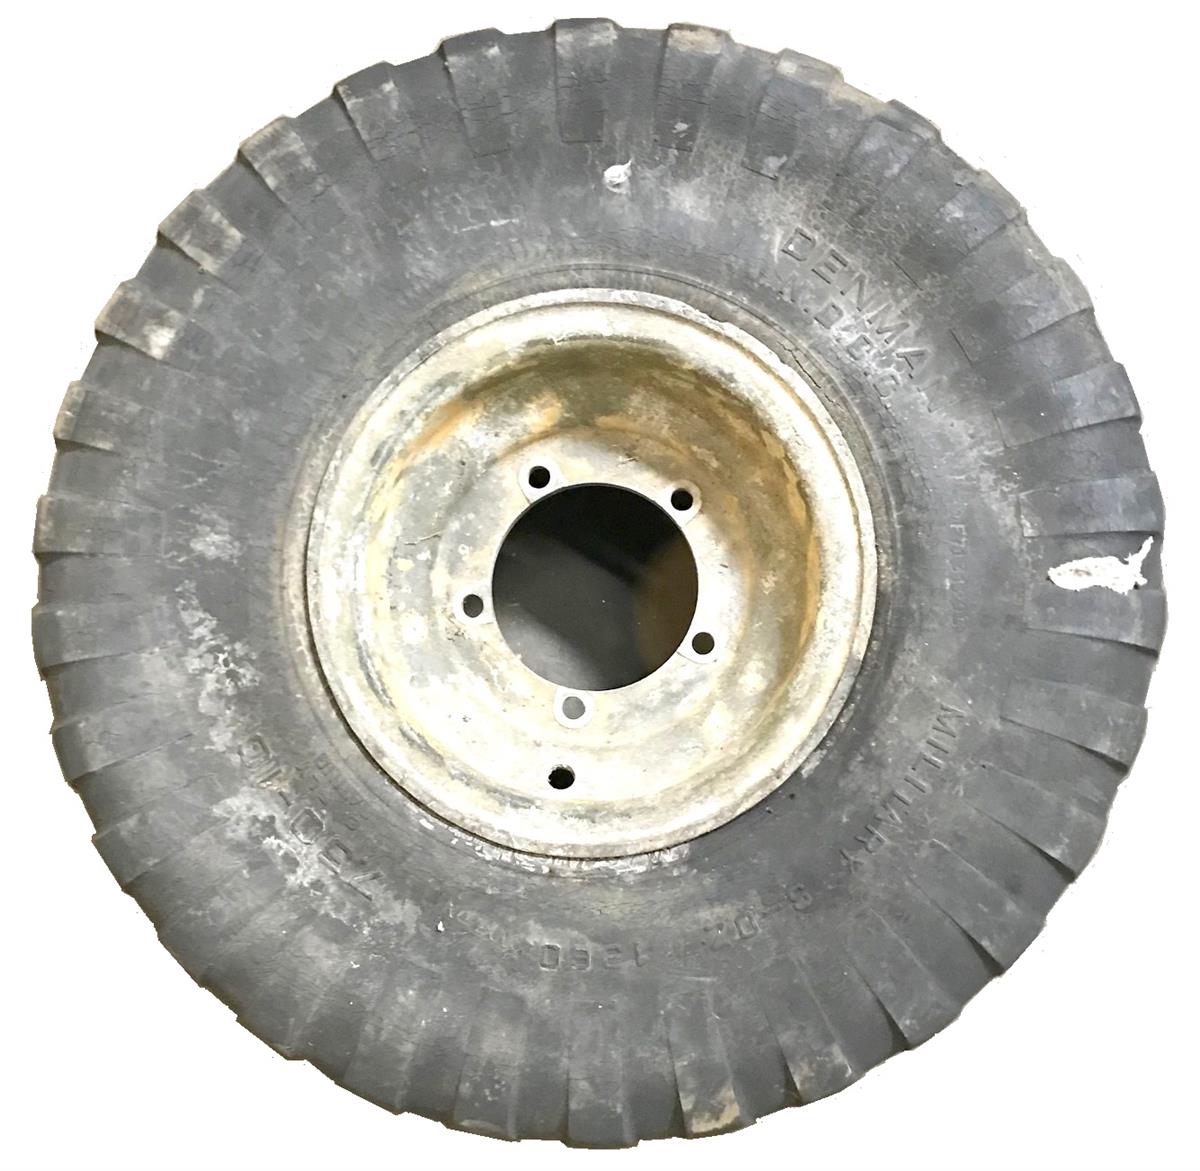 MU-432 | MU-432  Wheel Rim Steel for M274 Mule with 7.5-10 Tire  (1).jpg